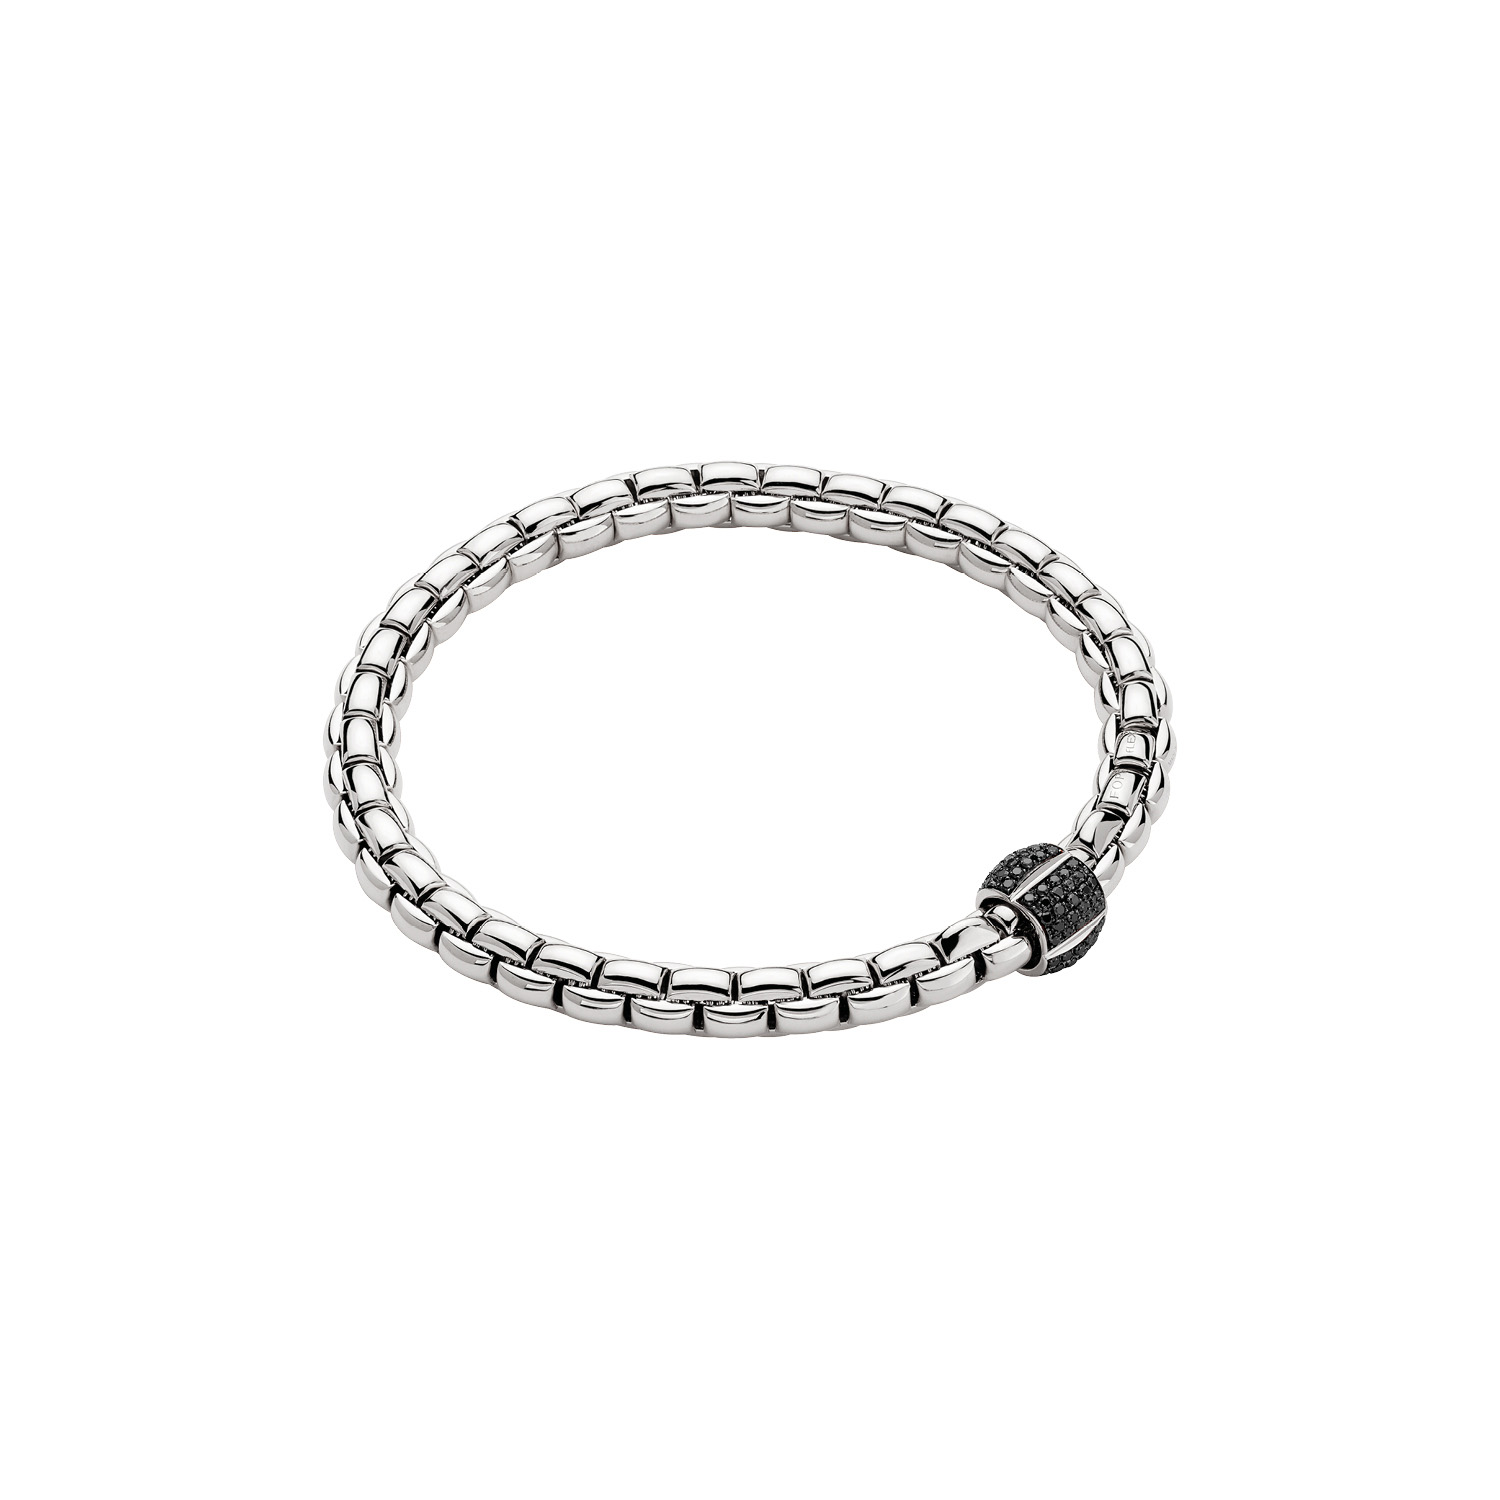 FOPE EKA Bracelet - 730 BBRM | Schwanke-Kasten Jewelers